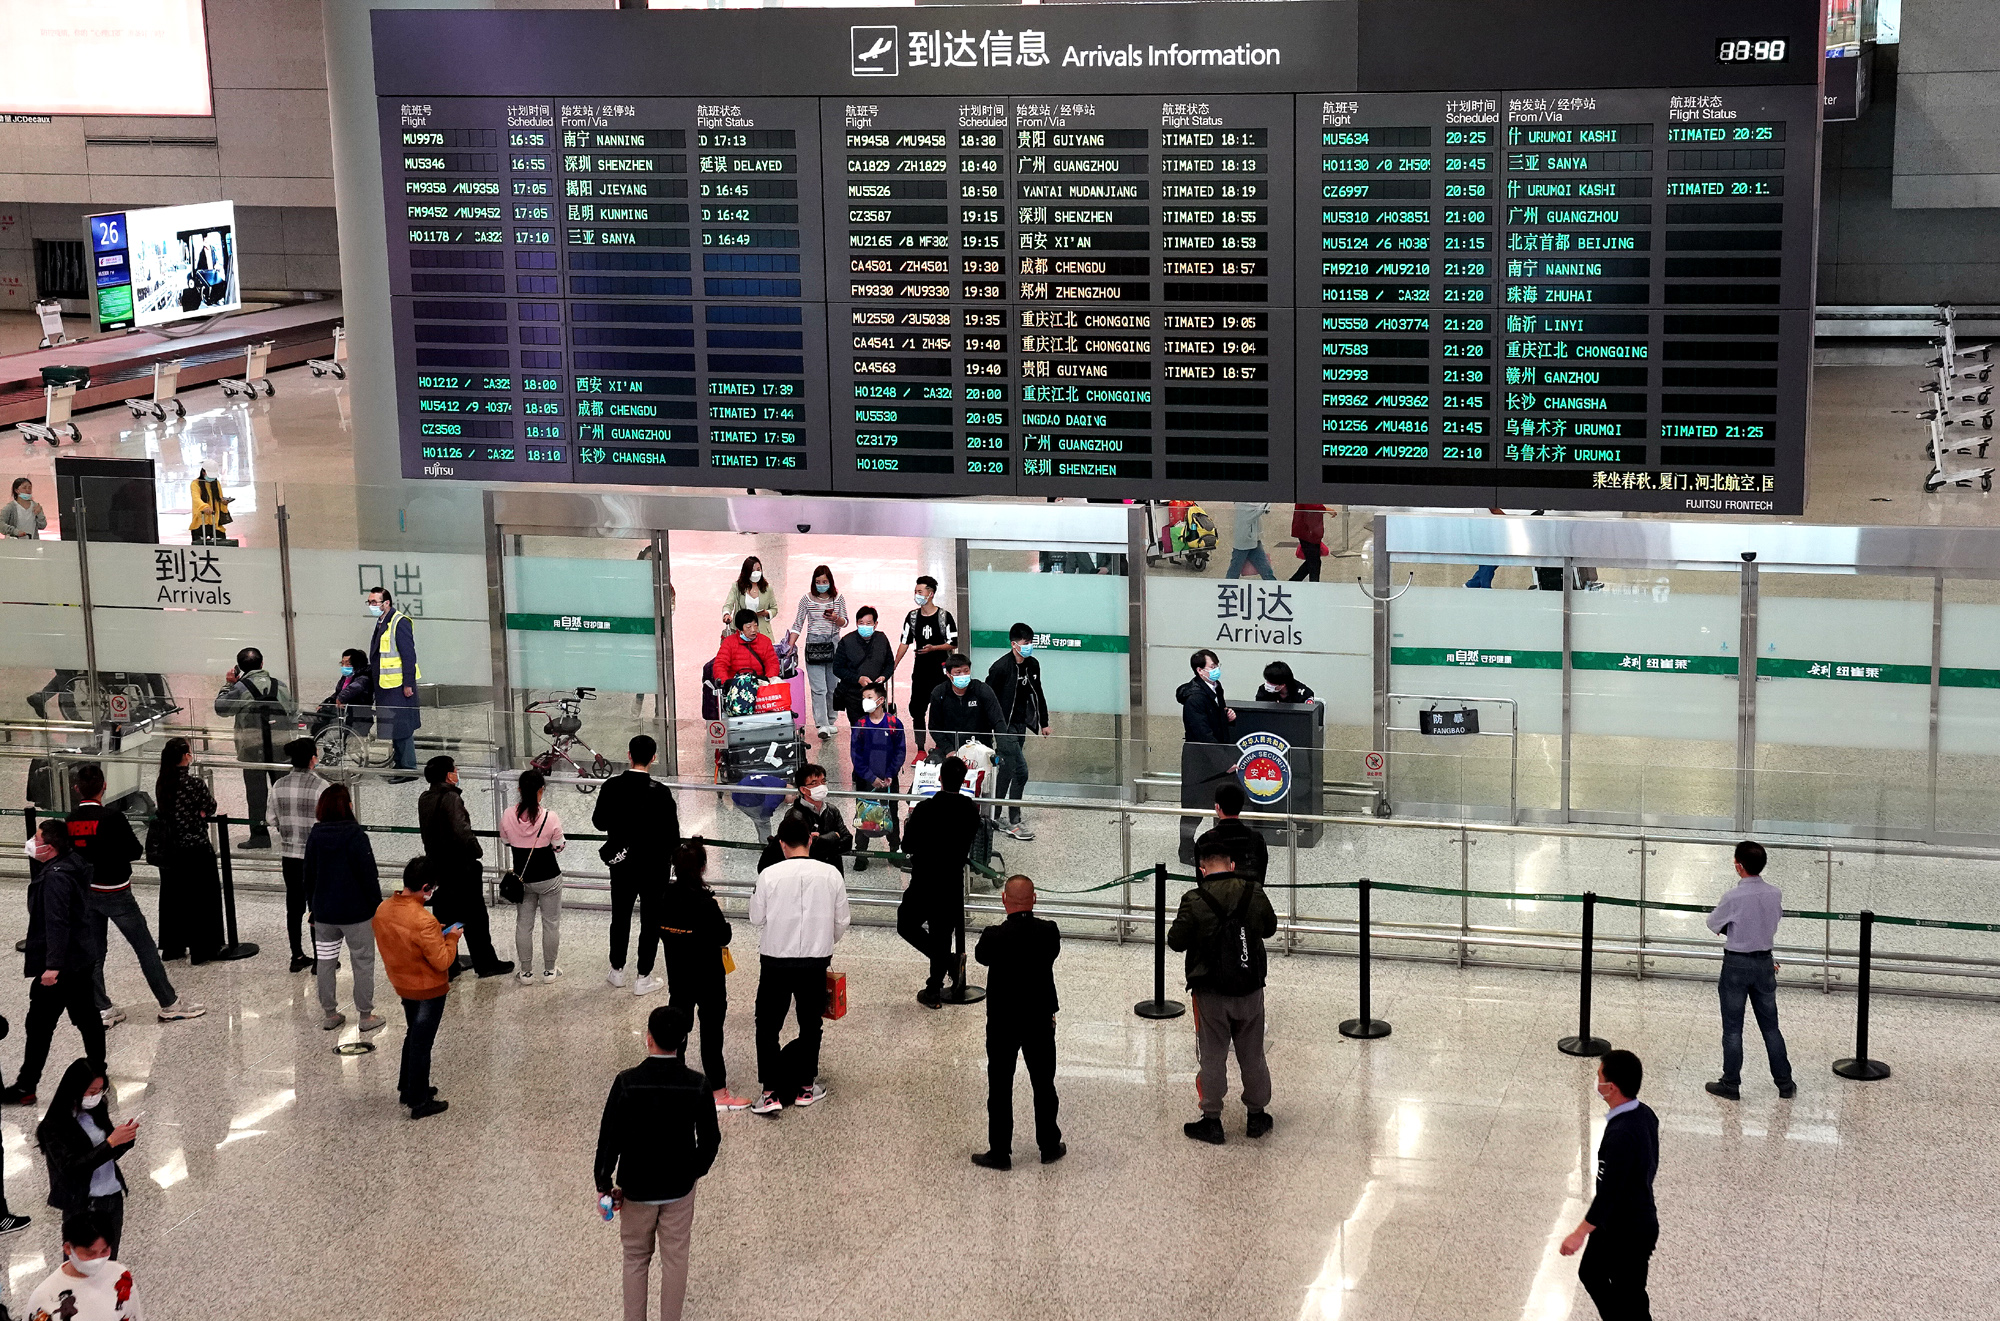 新华社照片,上海,2020年3月25日上海虹桥国际机场所有国际,港澳台航班